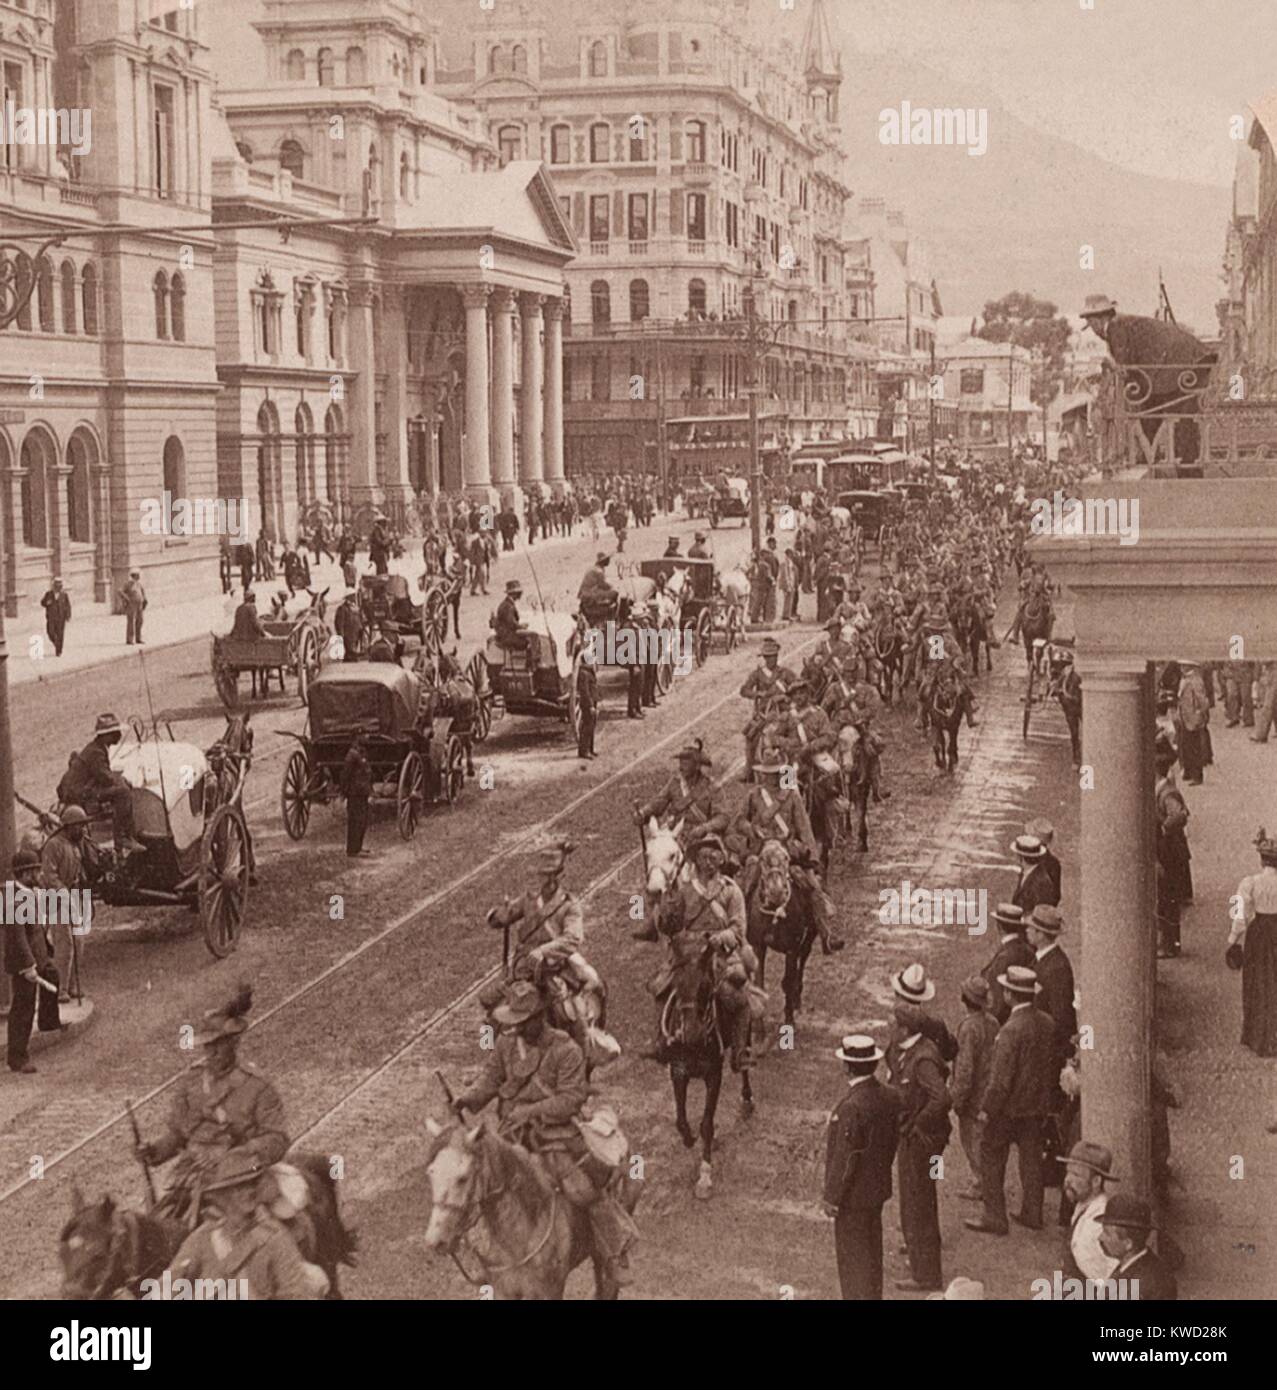 Imperial Light Horse Regiment nach unten marschieren Adderly St. in Kapstadt, Feb 26, 1900. Die Verstärkungen waren auf dem Weg zur Schlacht während des Burenkriegs, Februar 26, 1900 (BSLOC 2017 20 49) Stockfoto